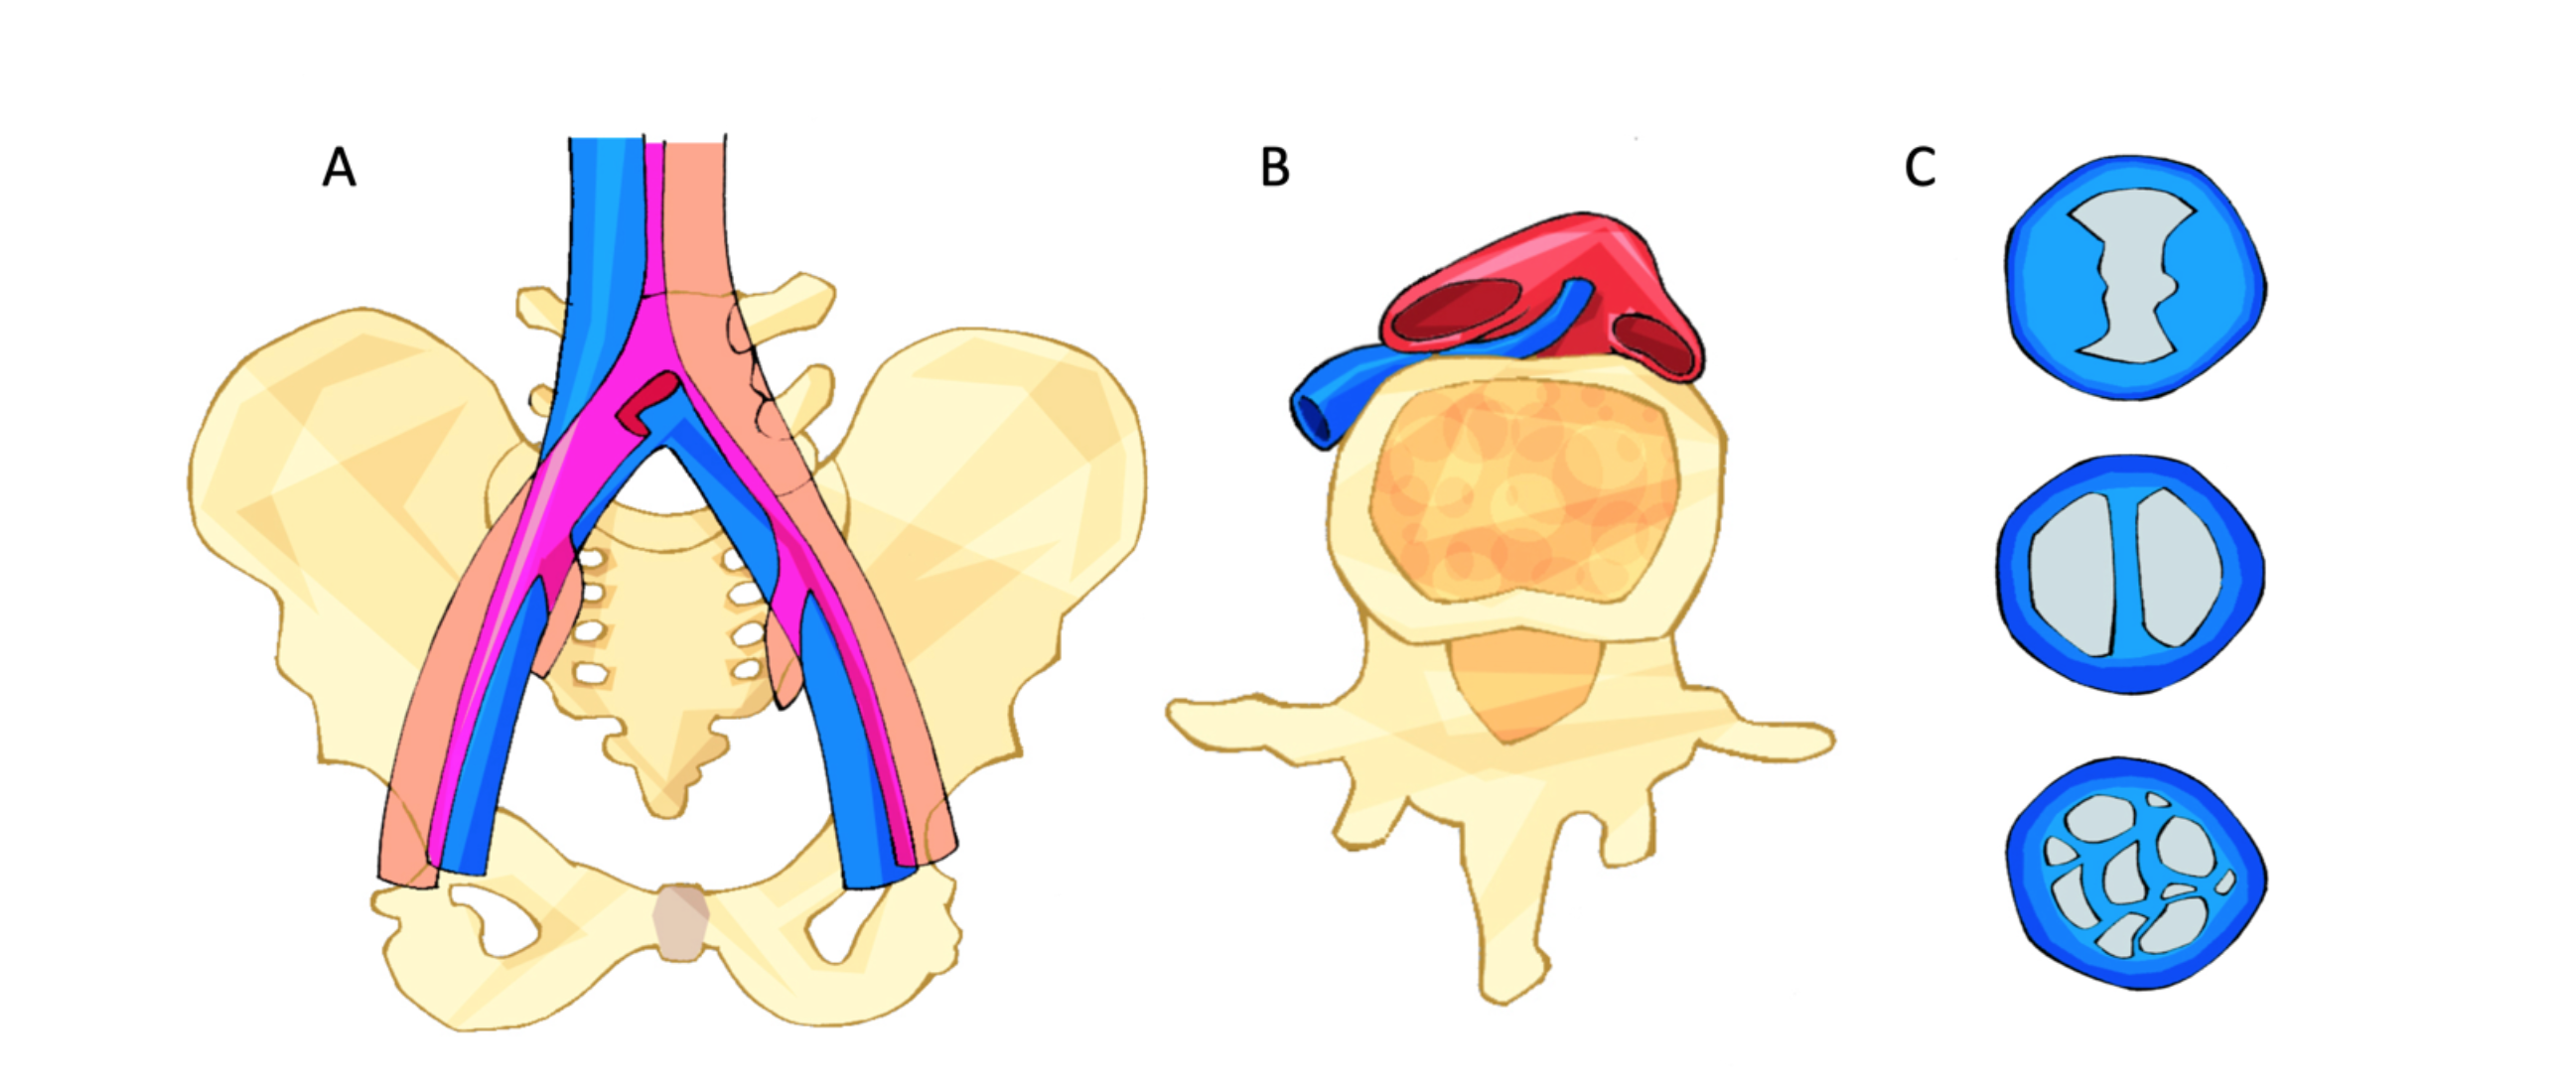 Figura 2 - Compressão de veia ilíaca comum esquerda por artéria ilíaca comum direita sobre coluna vertebral (A e B). Presença de obstruções endoluminais (espora, trave, membranas). 